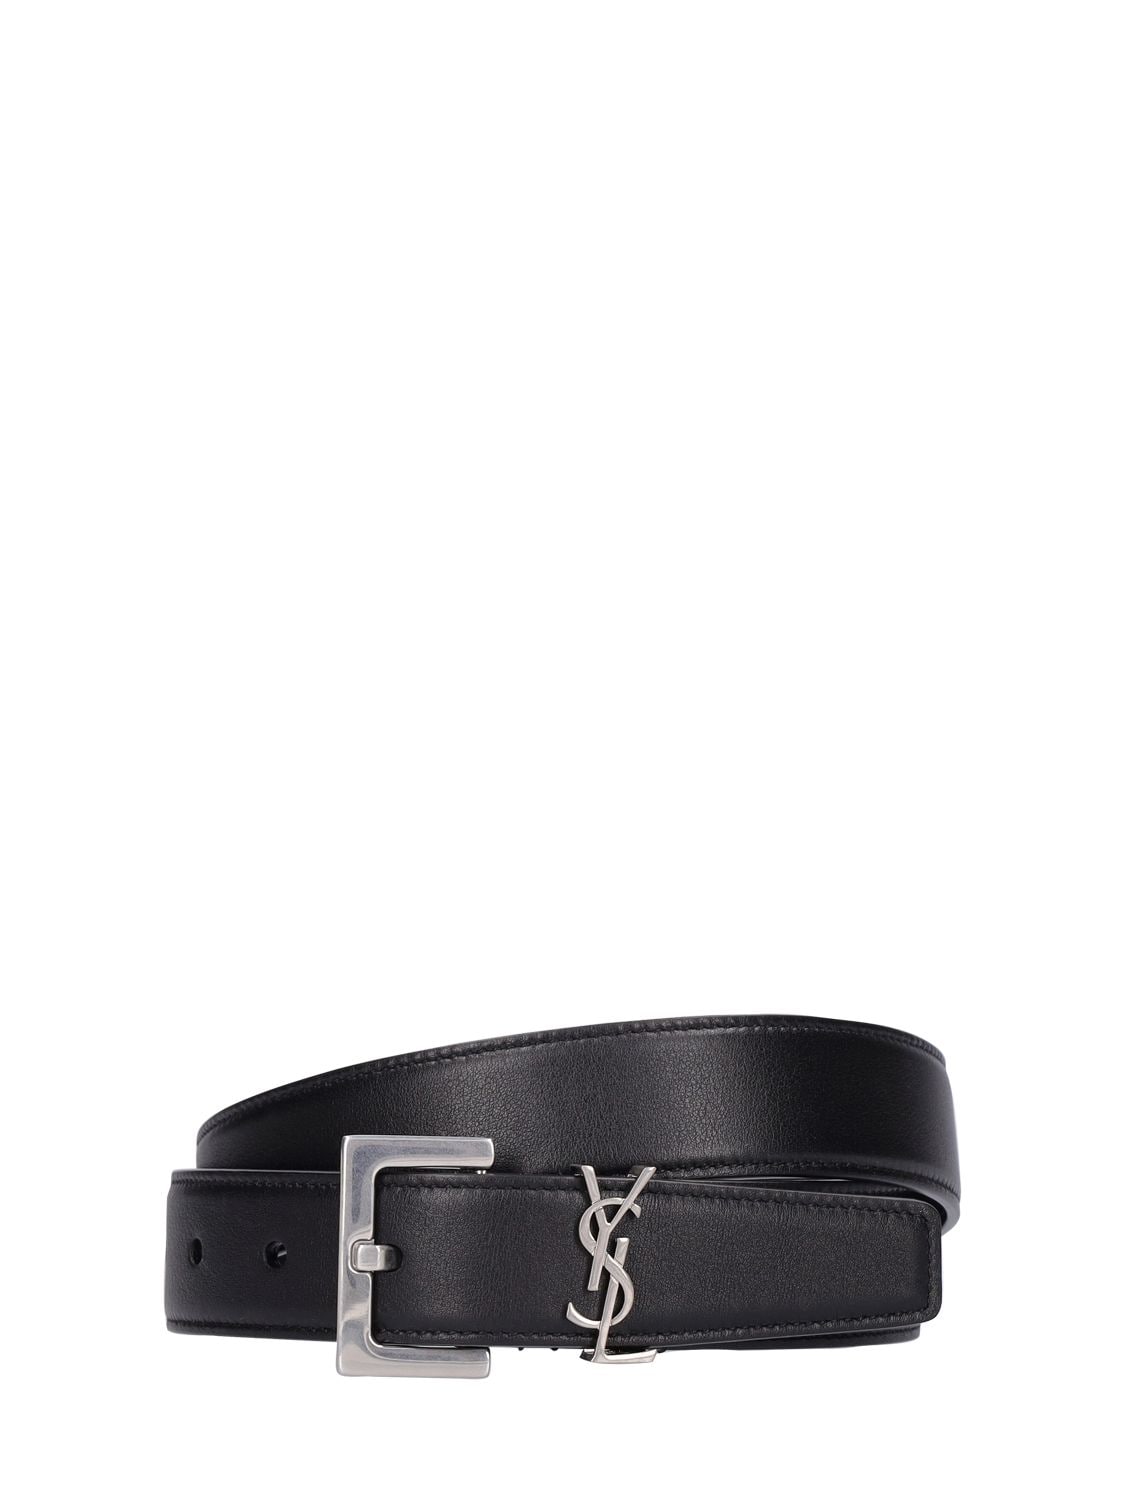 Saint Laurent Monogram Belt in Smooth Leather - Black - Belts